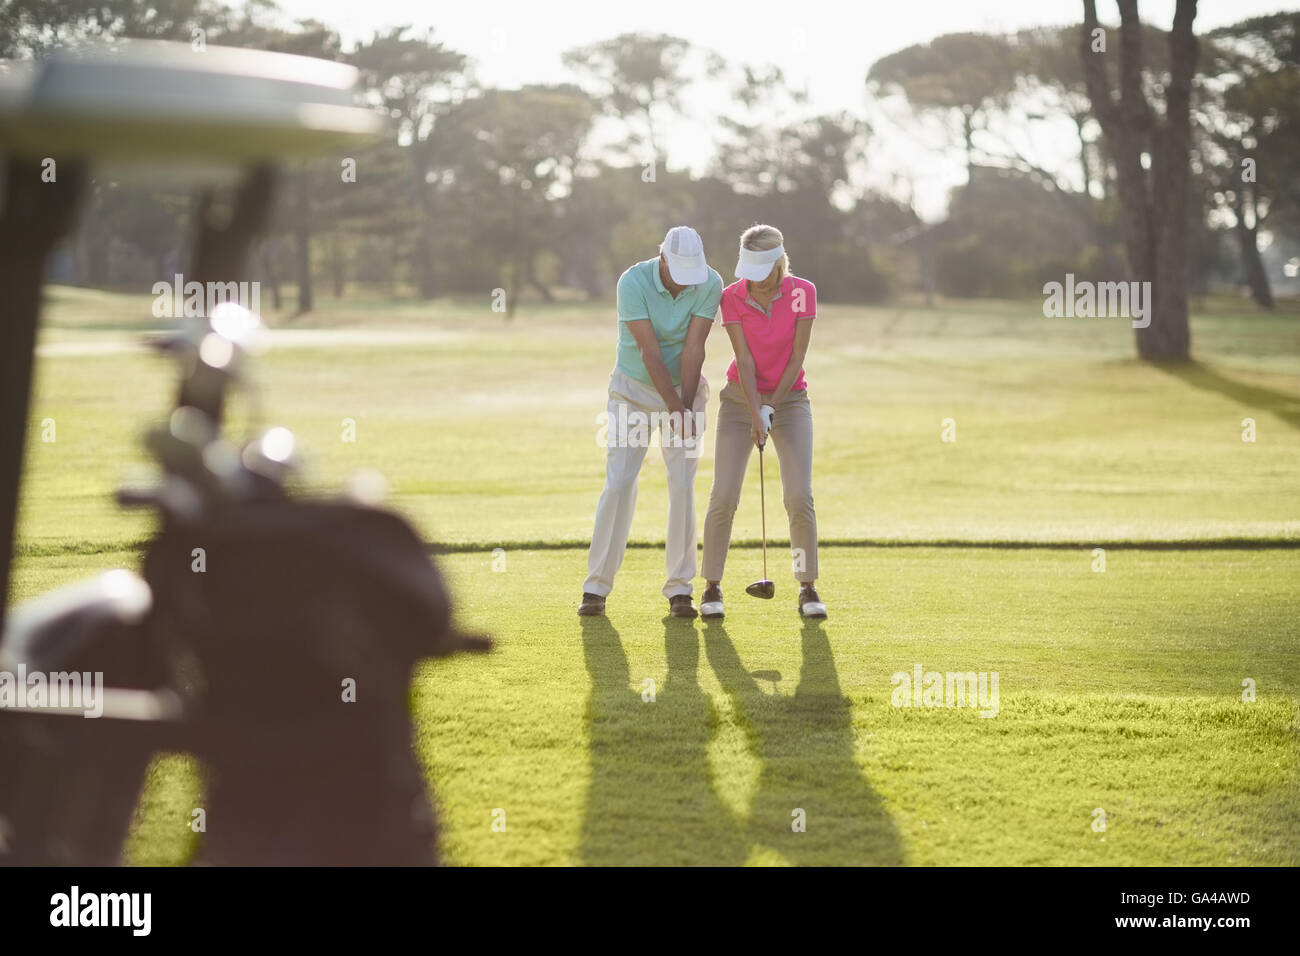 Toute la longueur de l'enseignement de l'homme femme à jouer au golf Banque D'Images